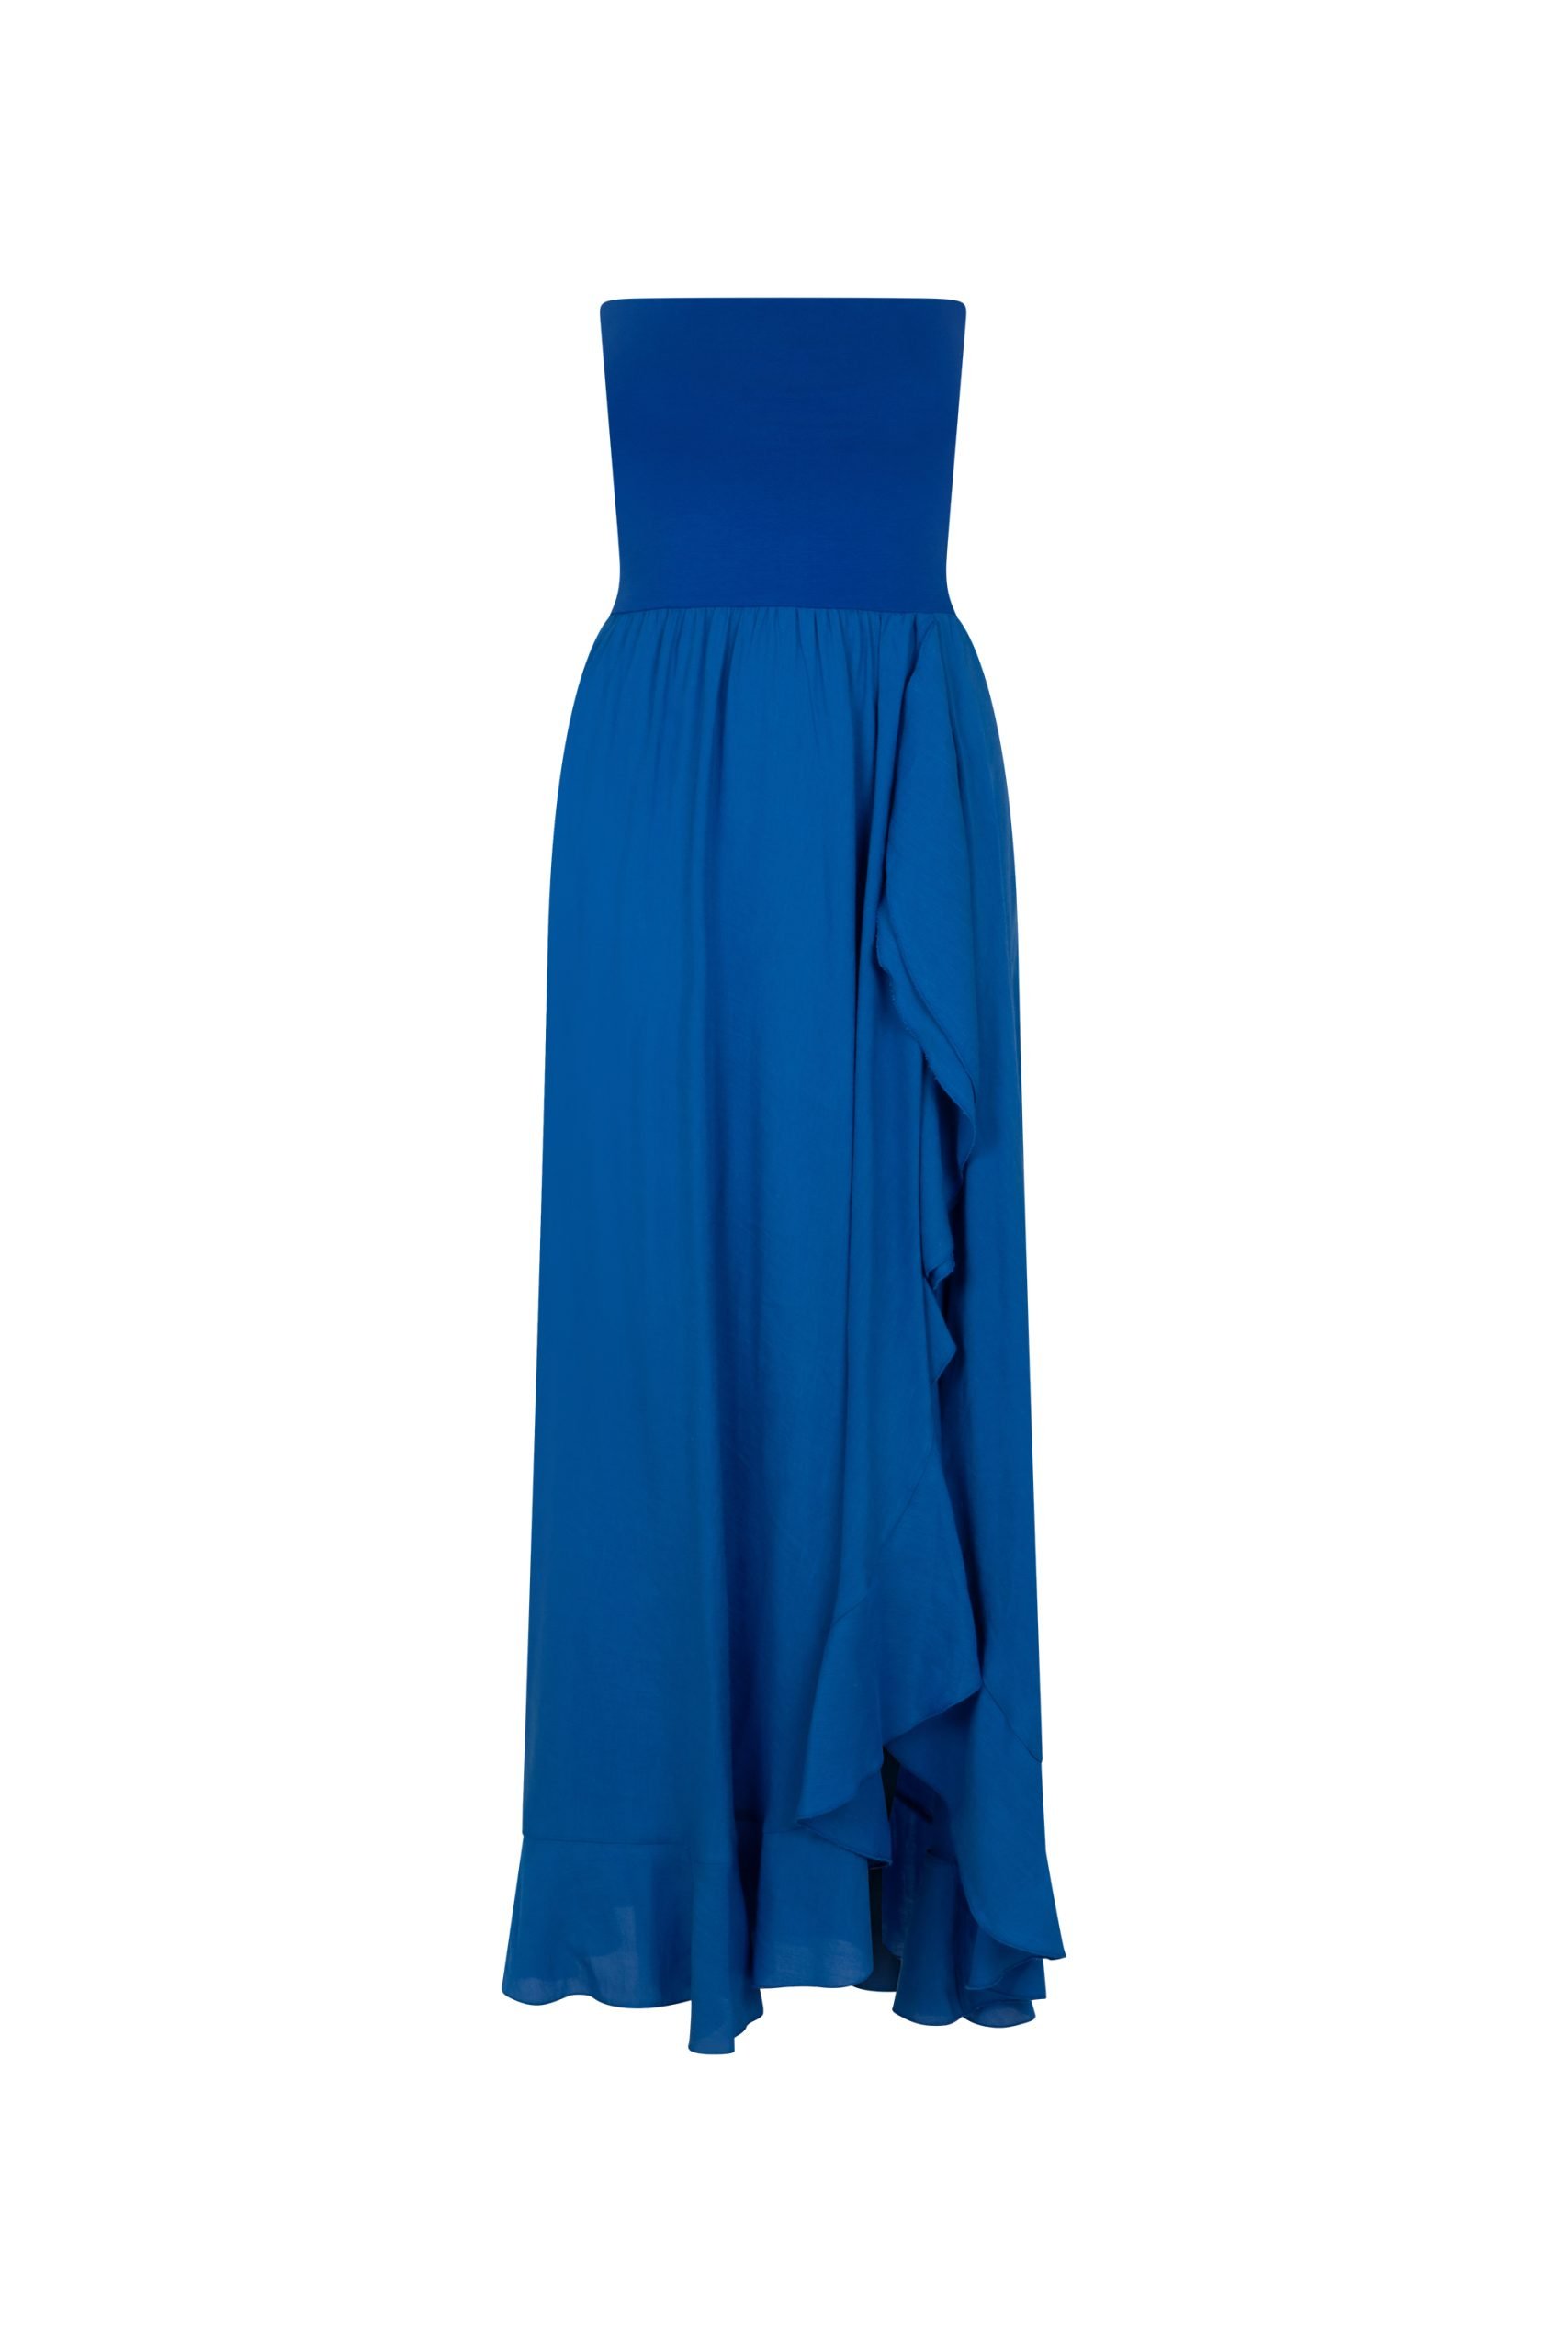 modrakowa sukienka z rozcięciem